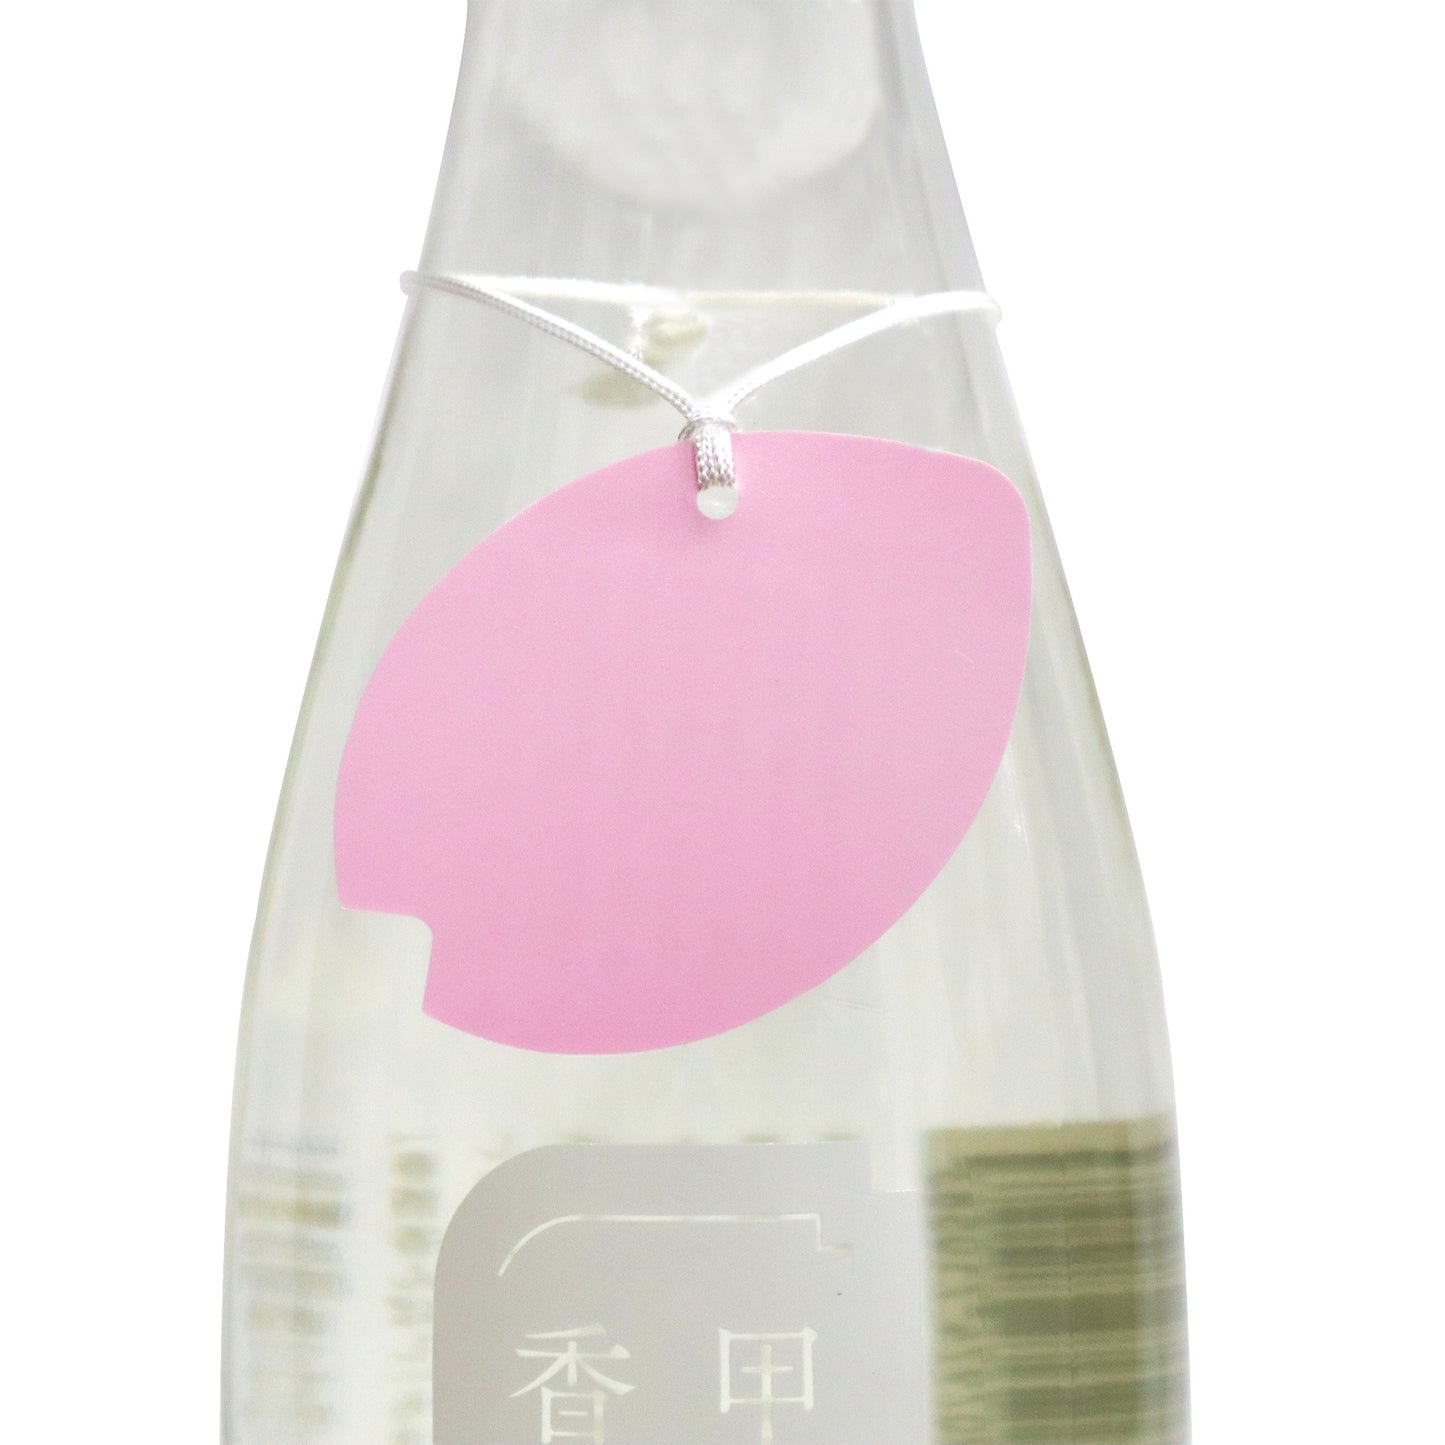 【甲子】春酒 香んばし 純米大吟醸 720ml/飯沼本家